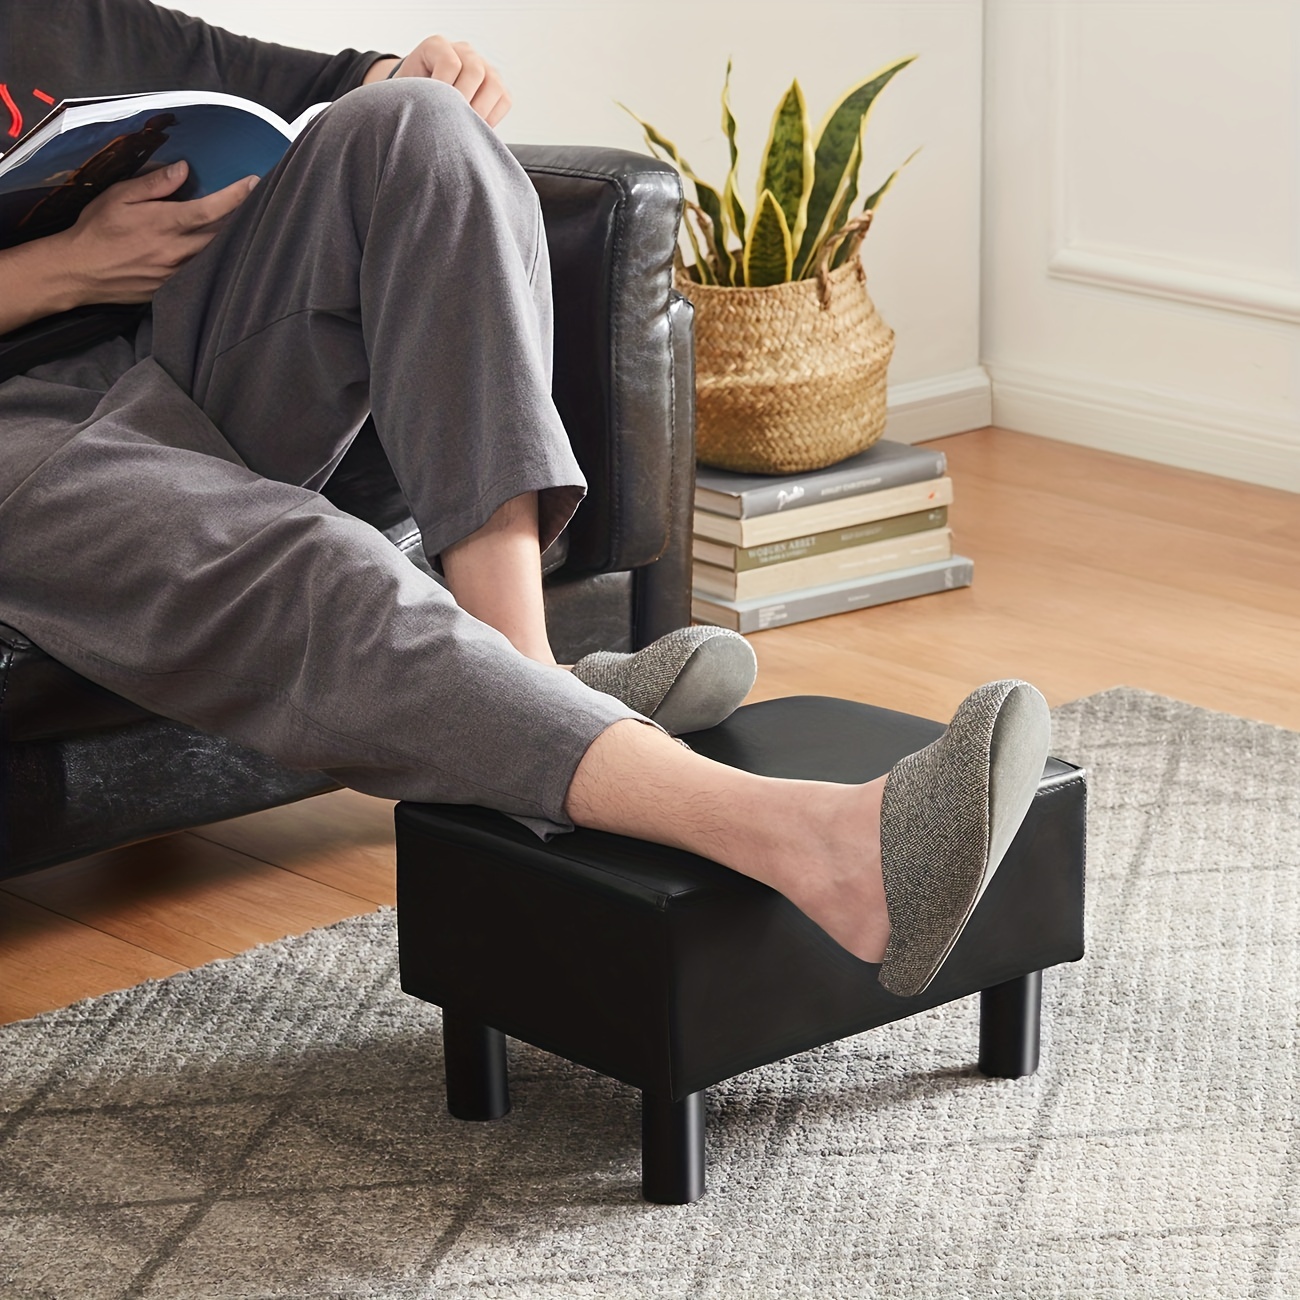 Foot Stool for Bedroom, Wood Step Stool, Footrest for Under Desk